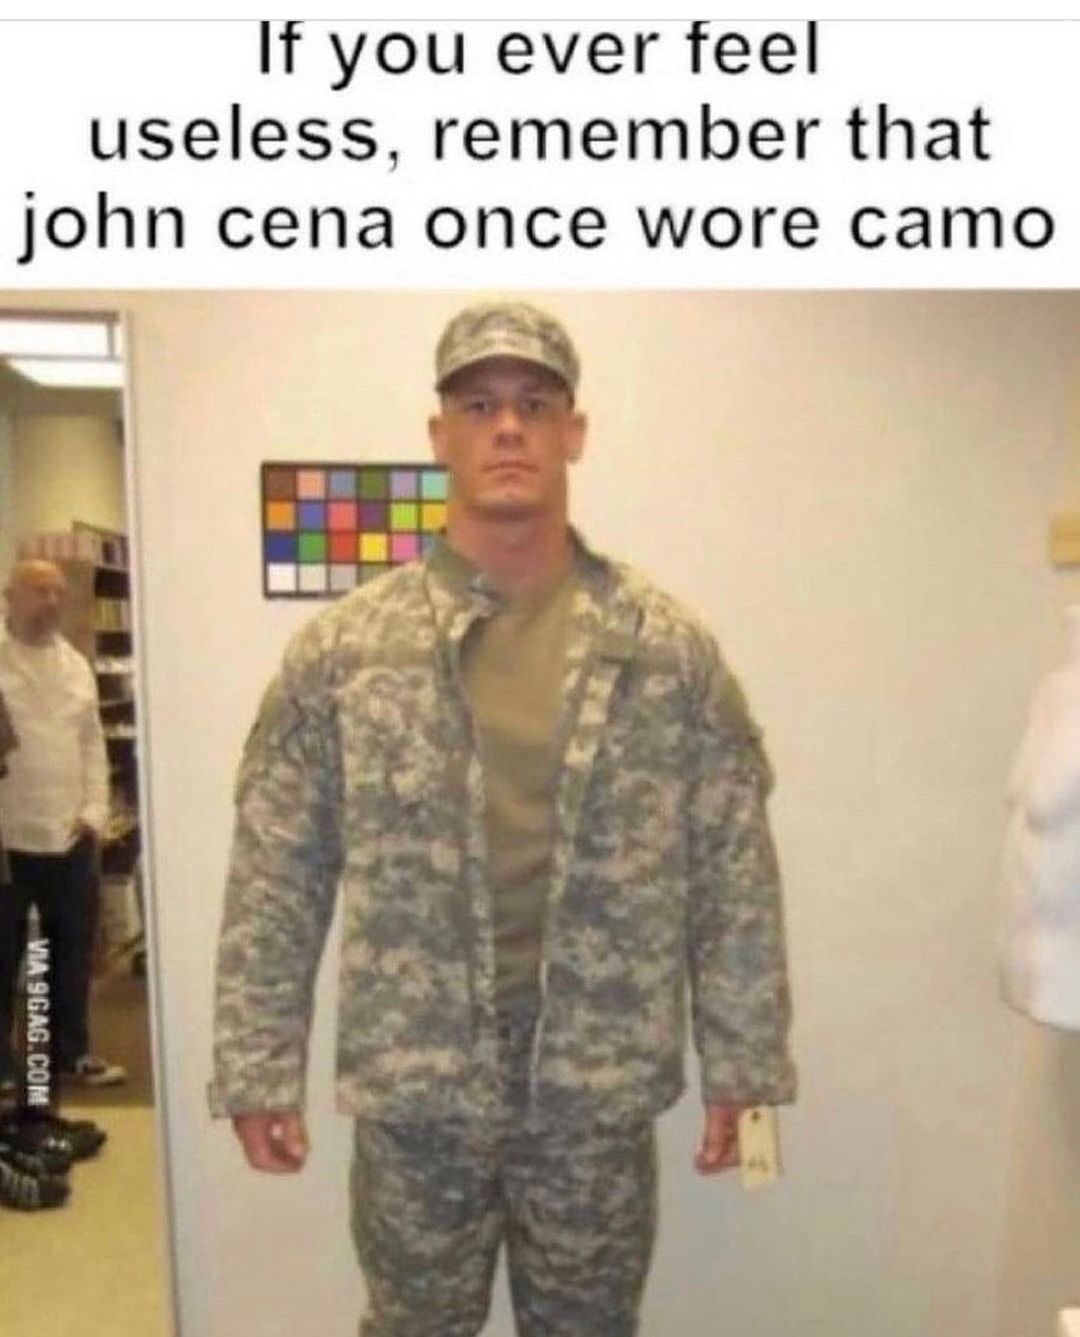 John - meme